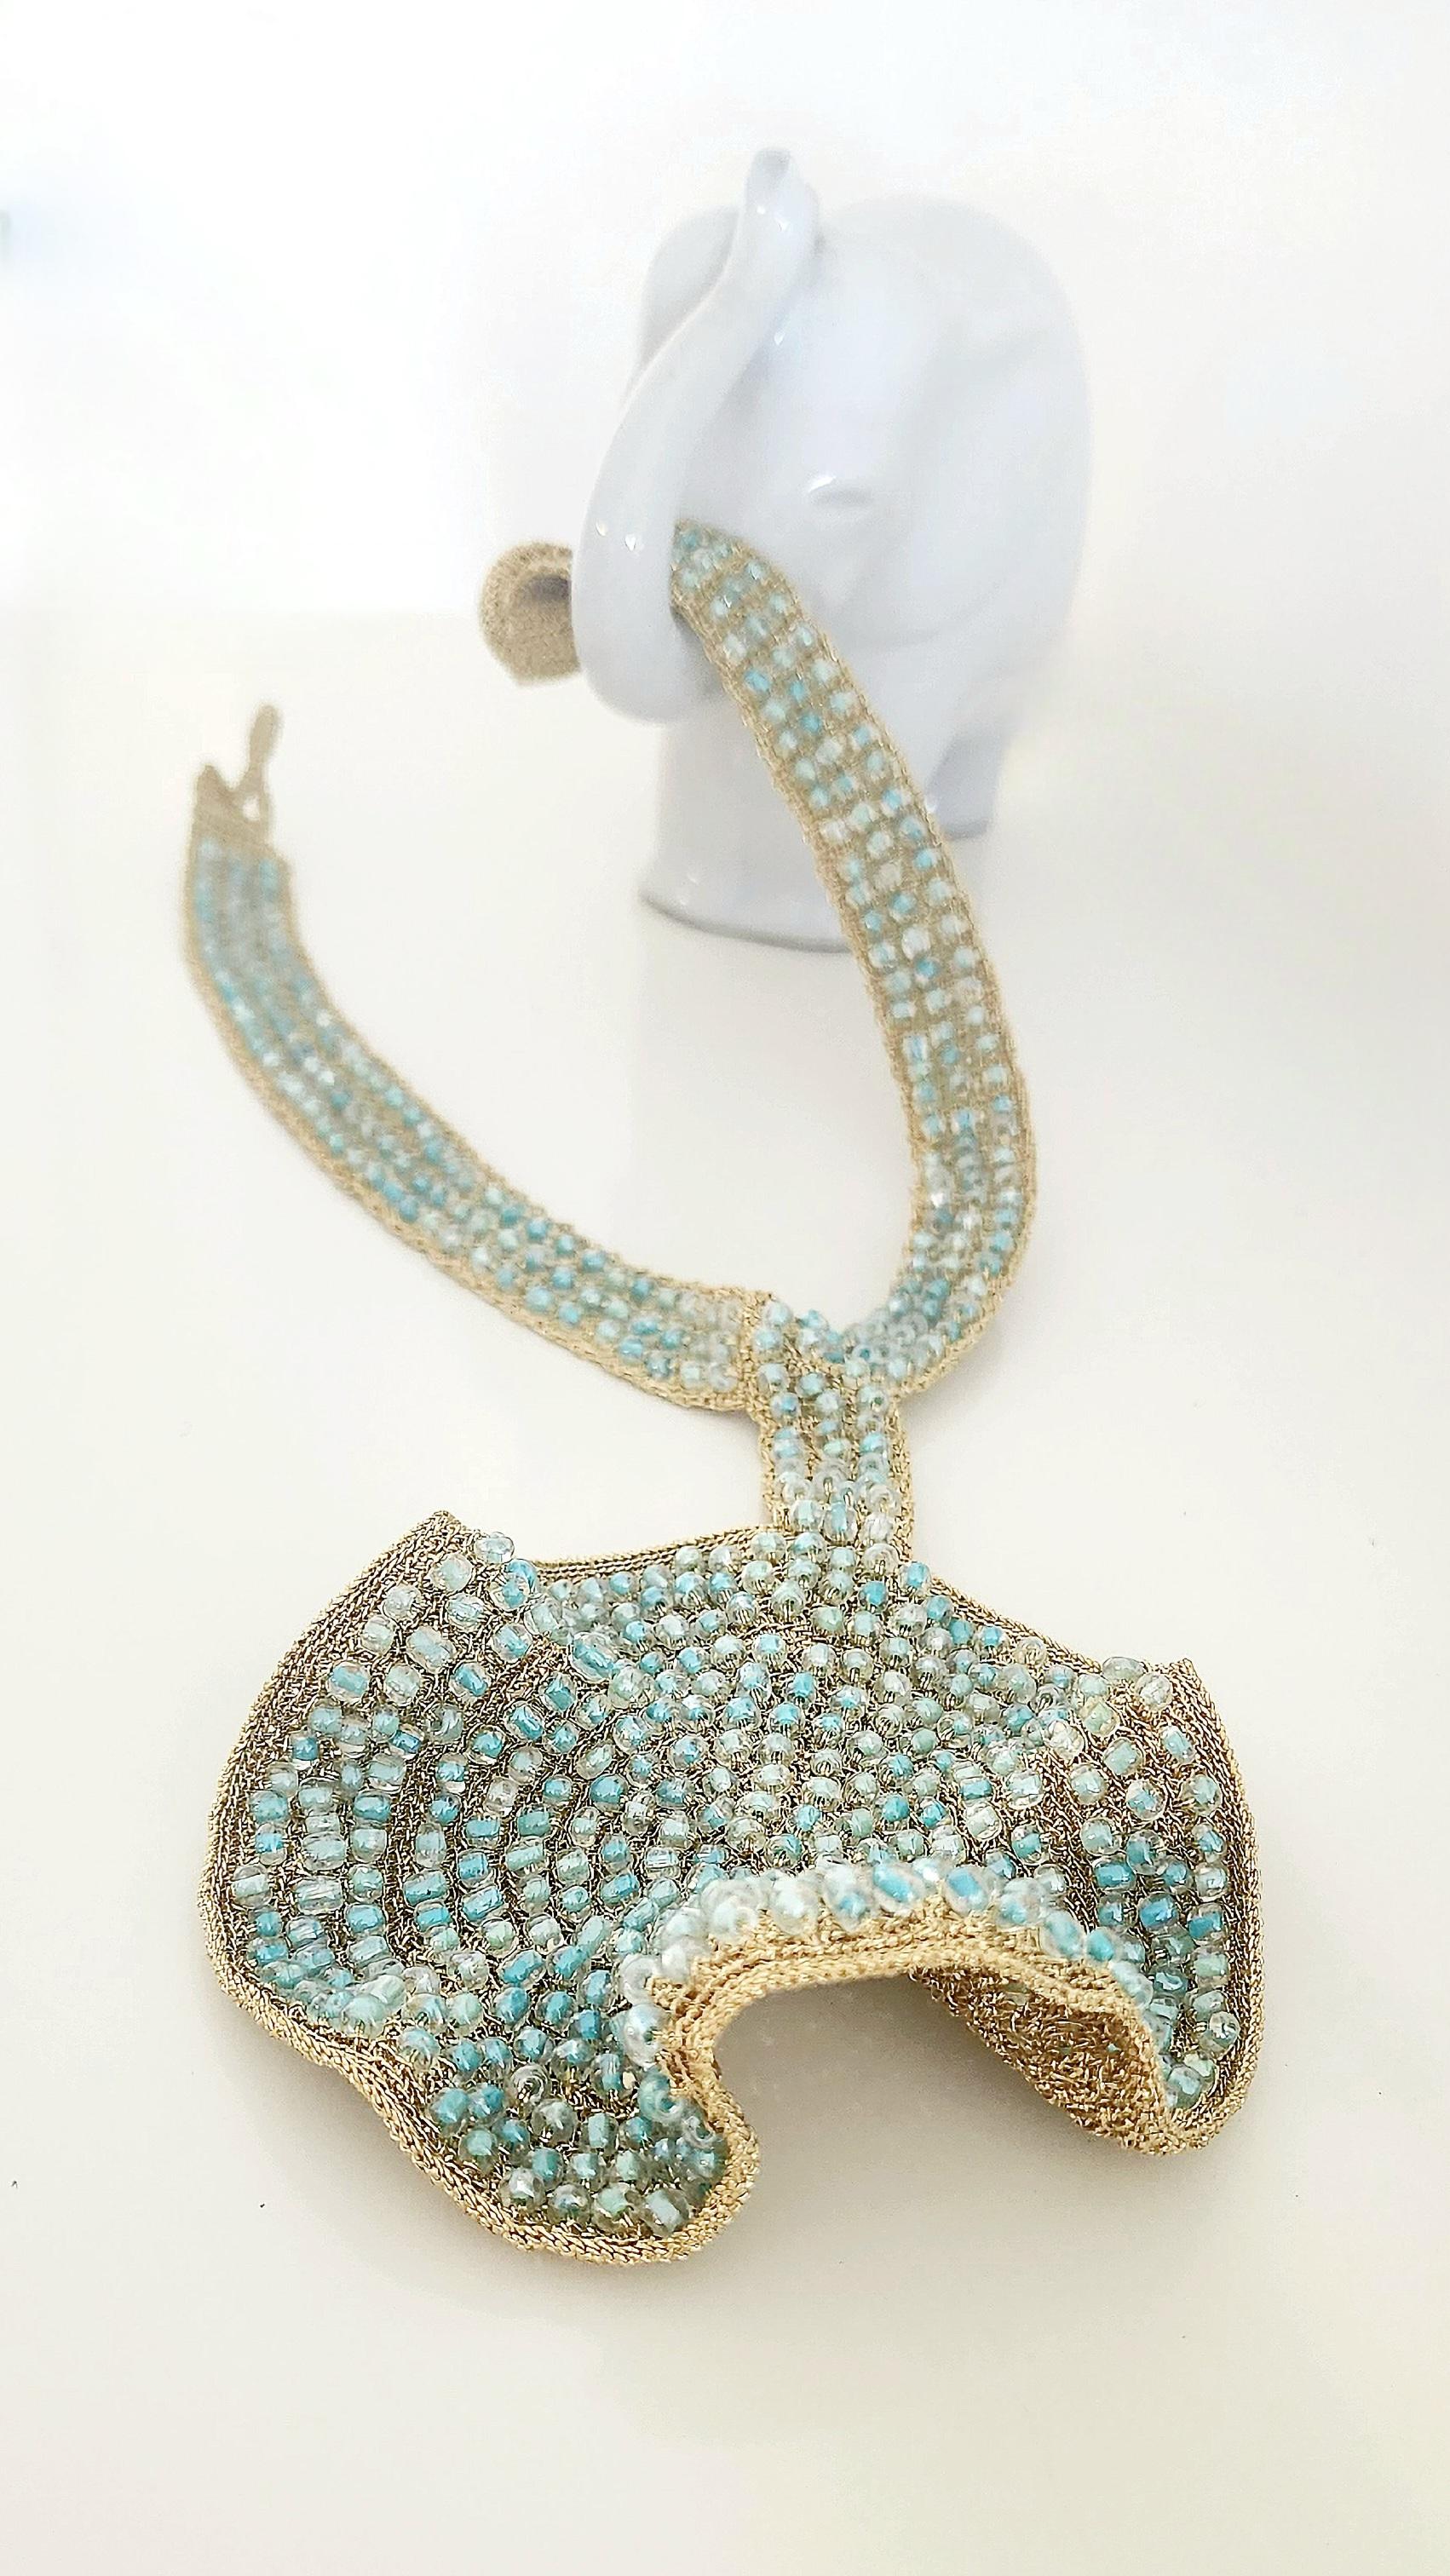 Artisan Statement Light Blue Glass Beads Crochet Necklace Light Golden Thread For Sale